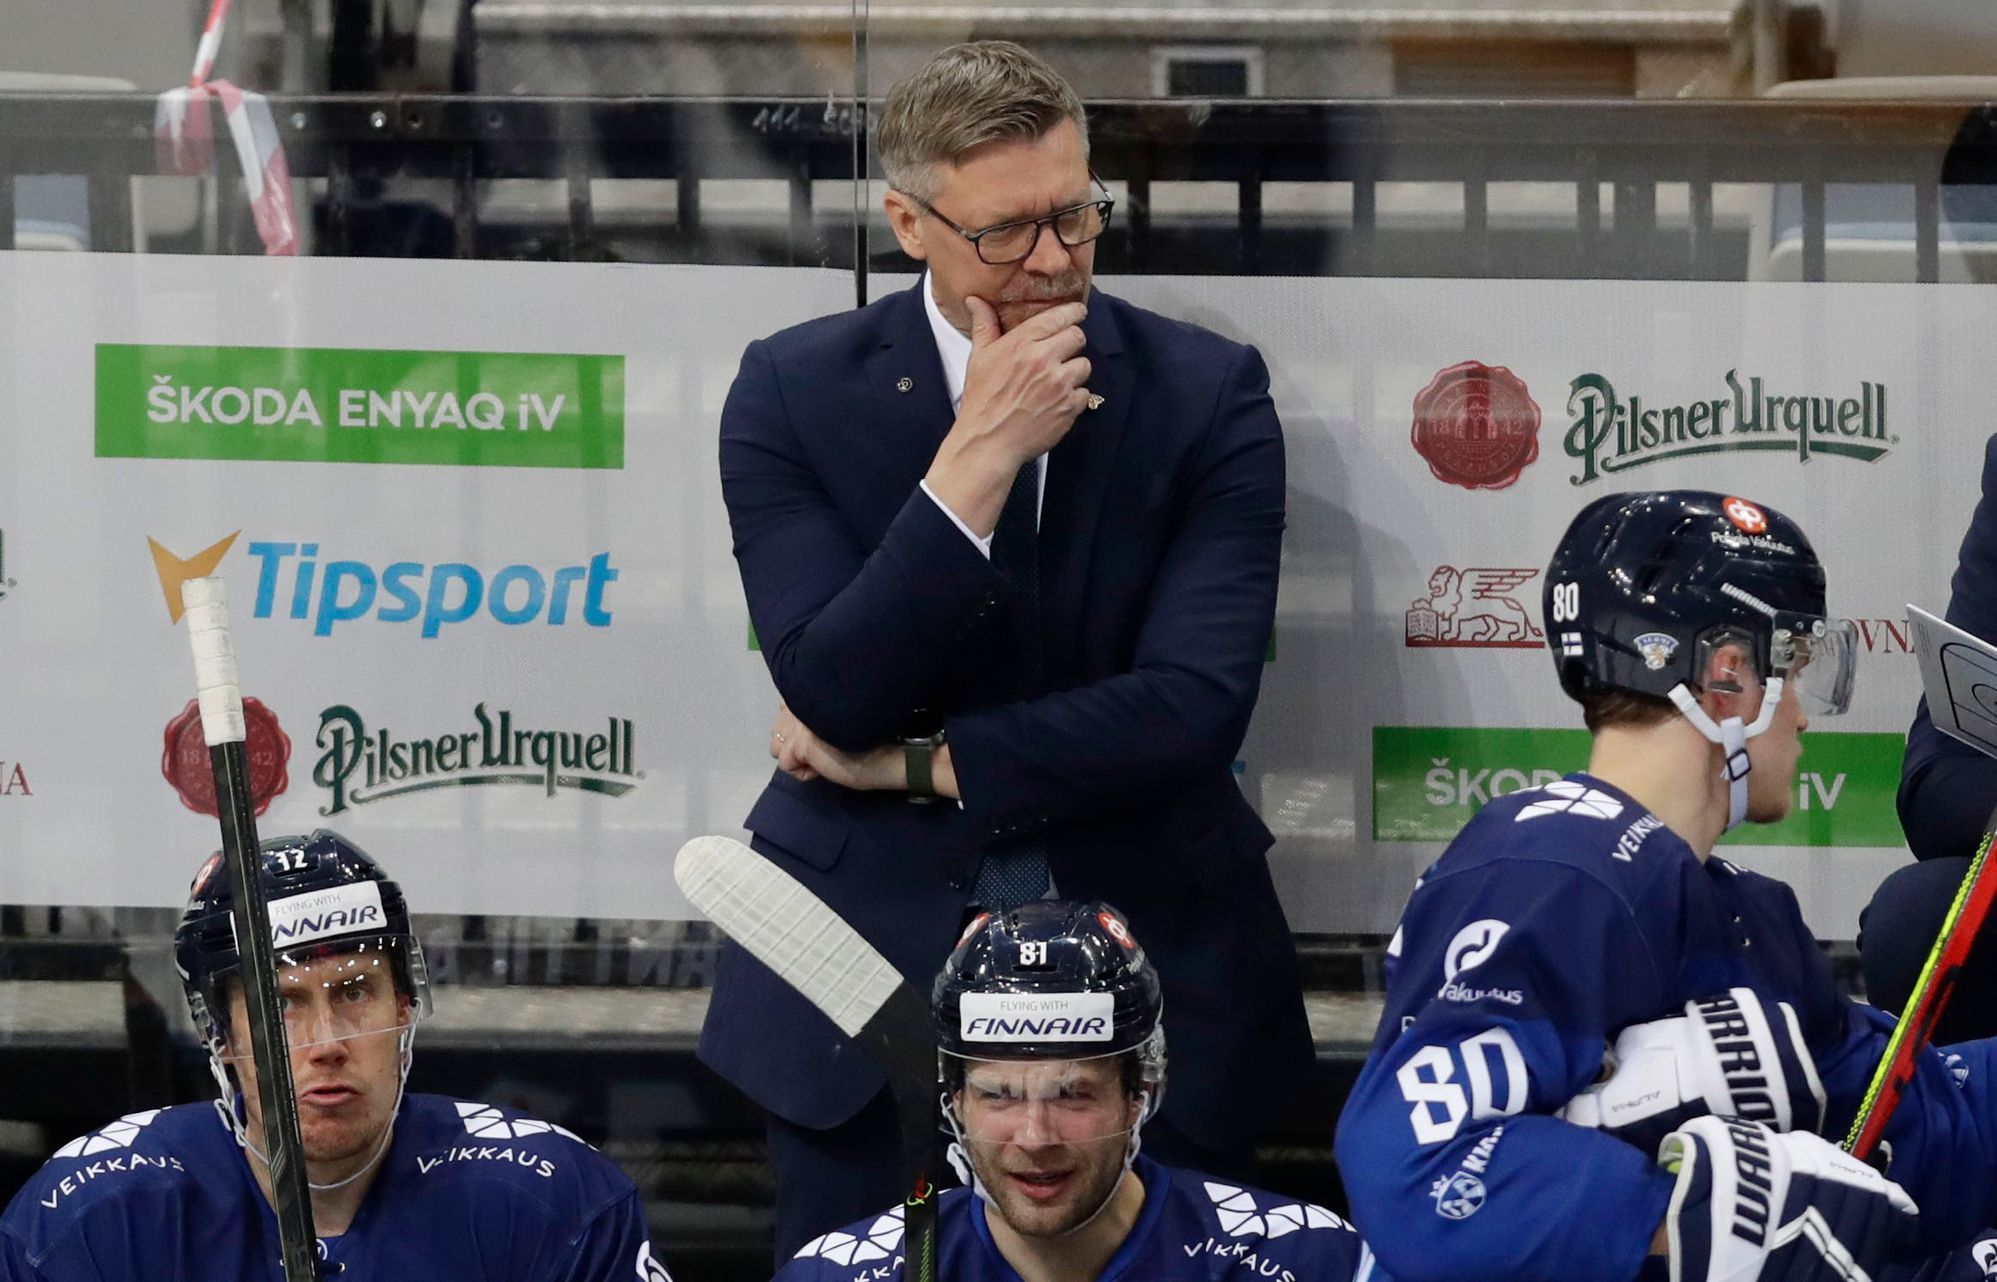 České hokejové hry 2021: Česko - Finsko